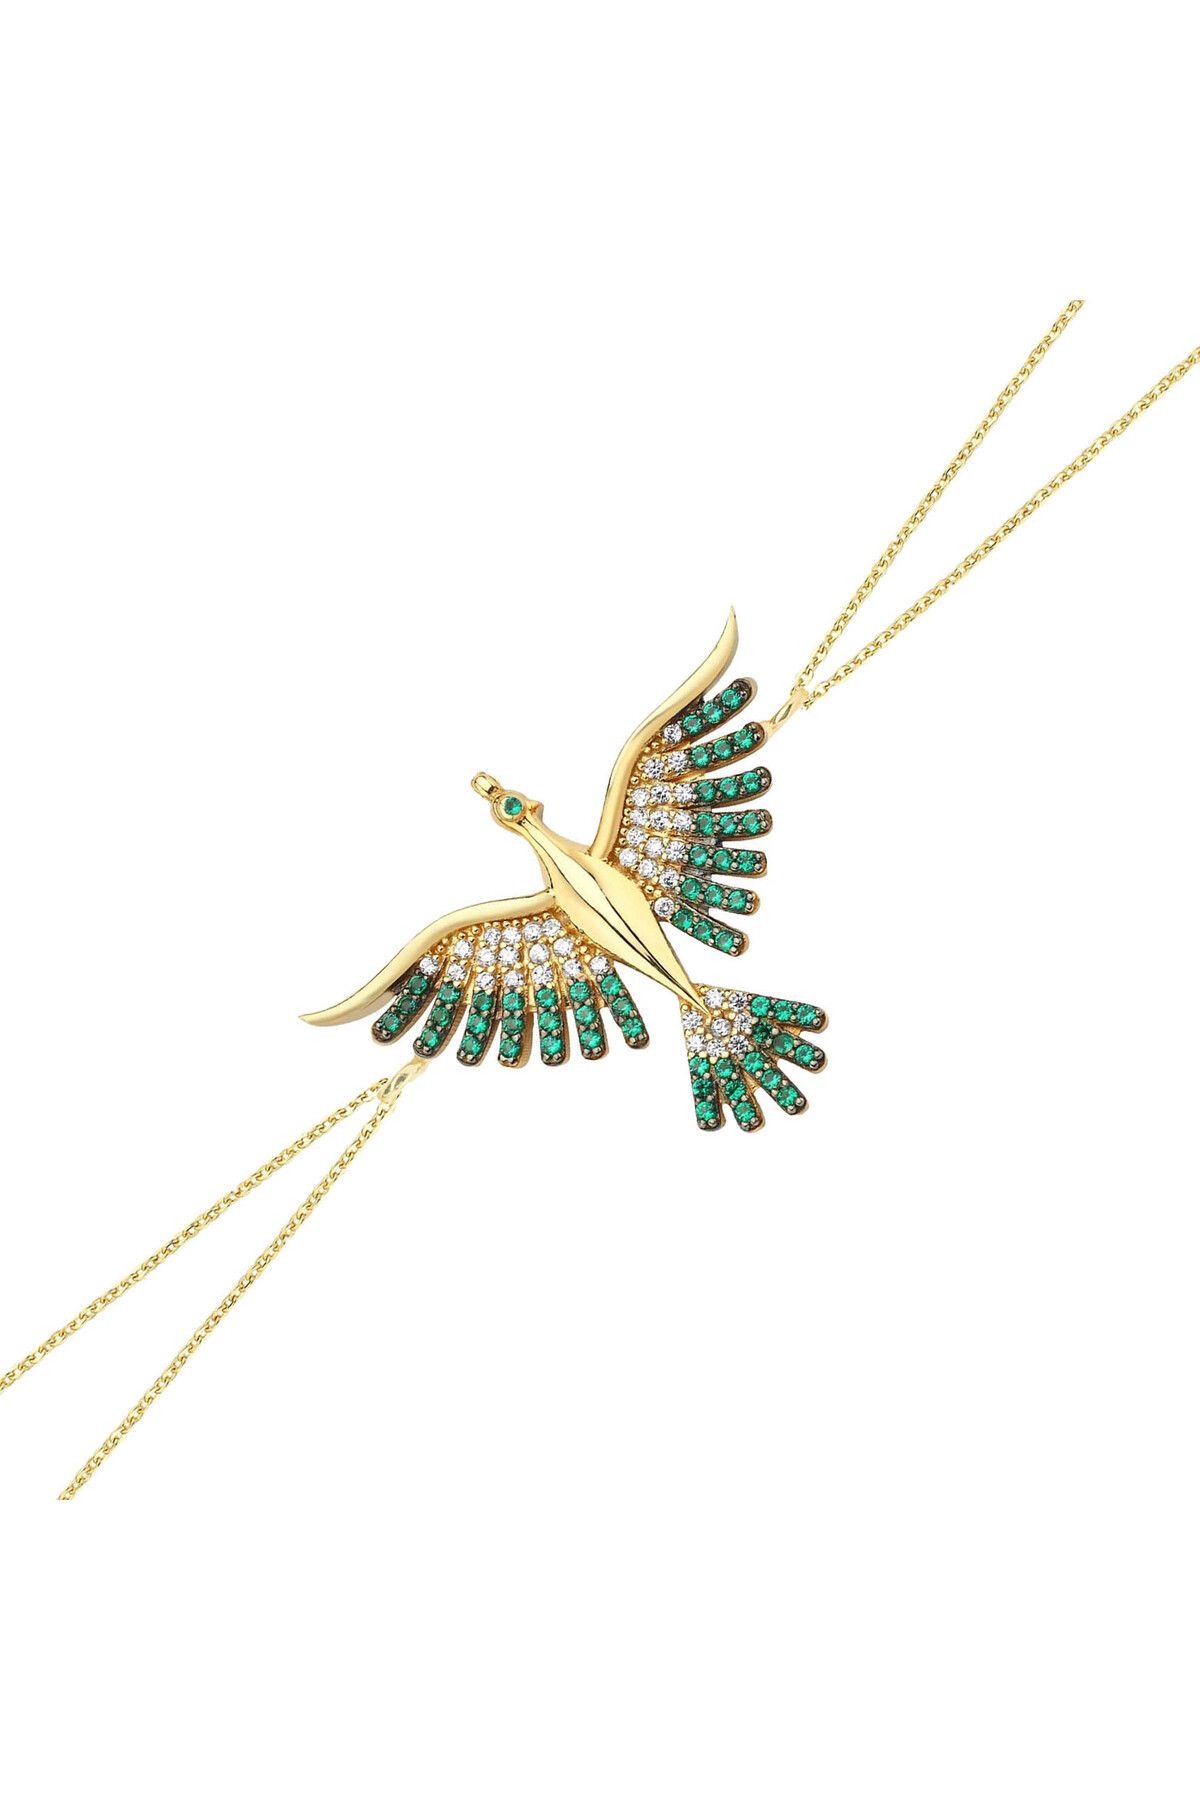 Kayra Mücevher Yeşil Taşlı Anka Kuşu Altın Kaplama Bileklik GMBLK89